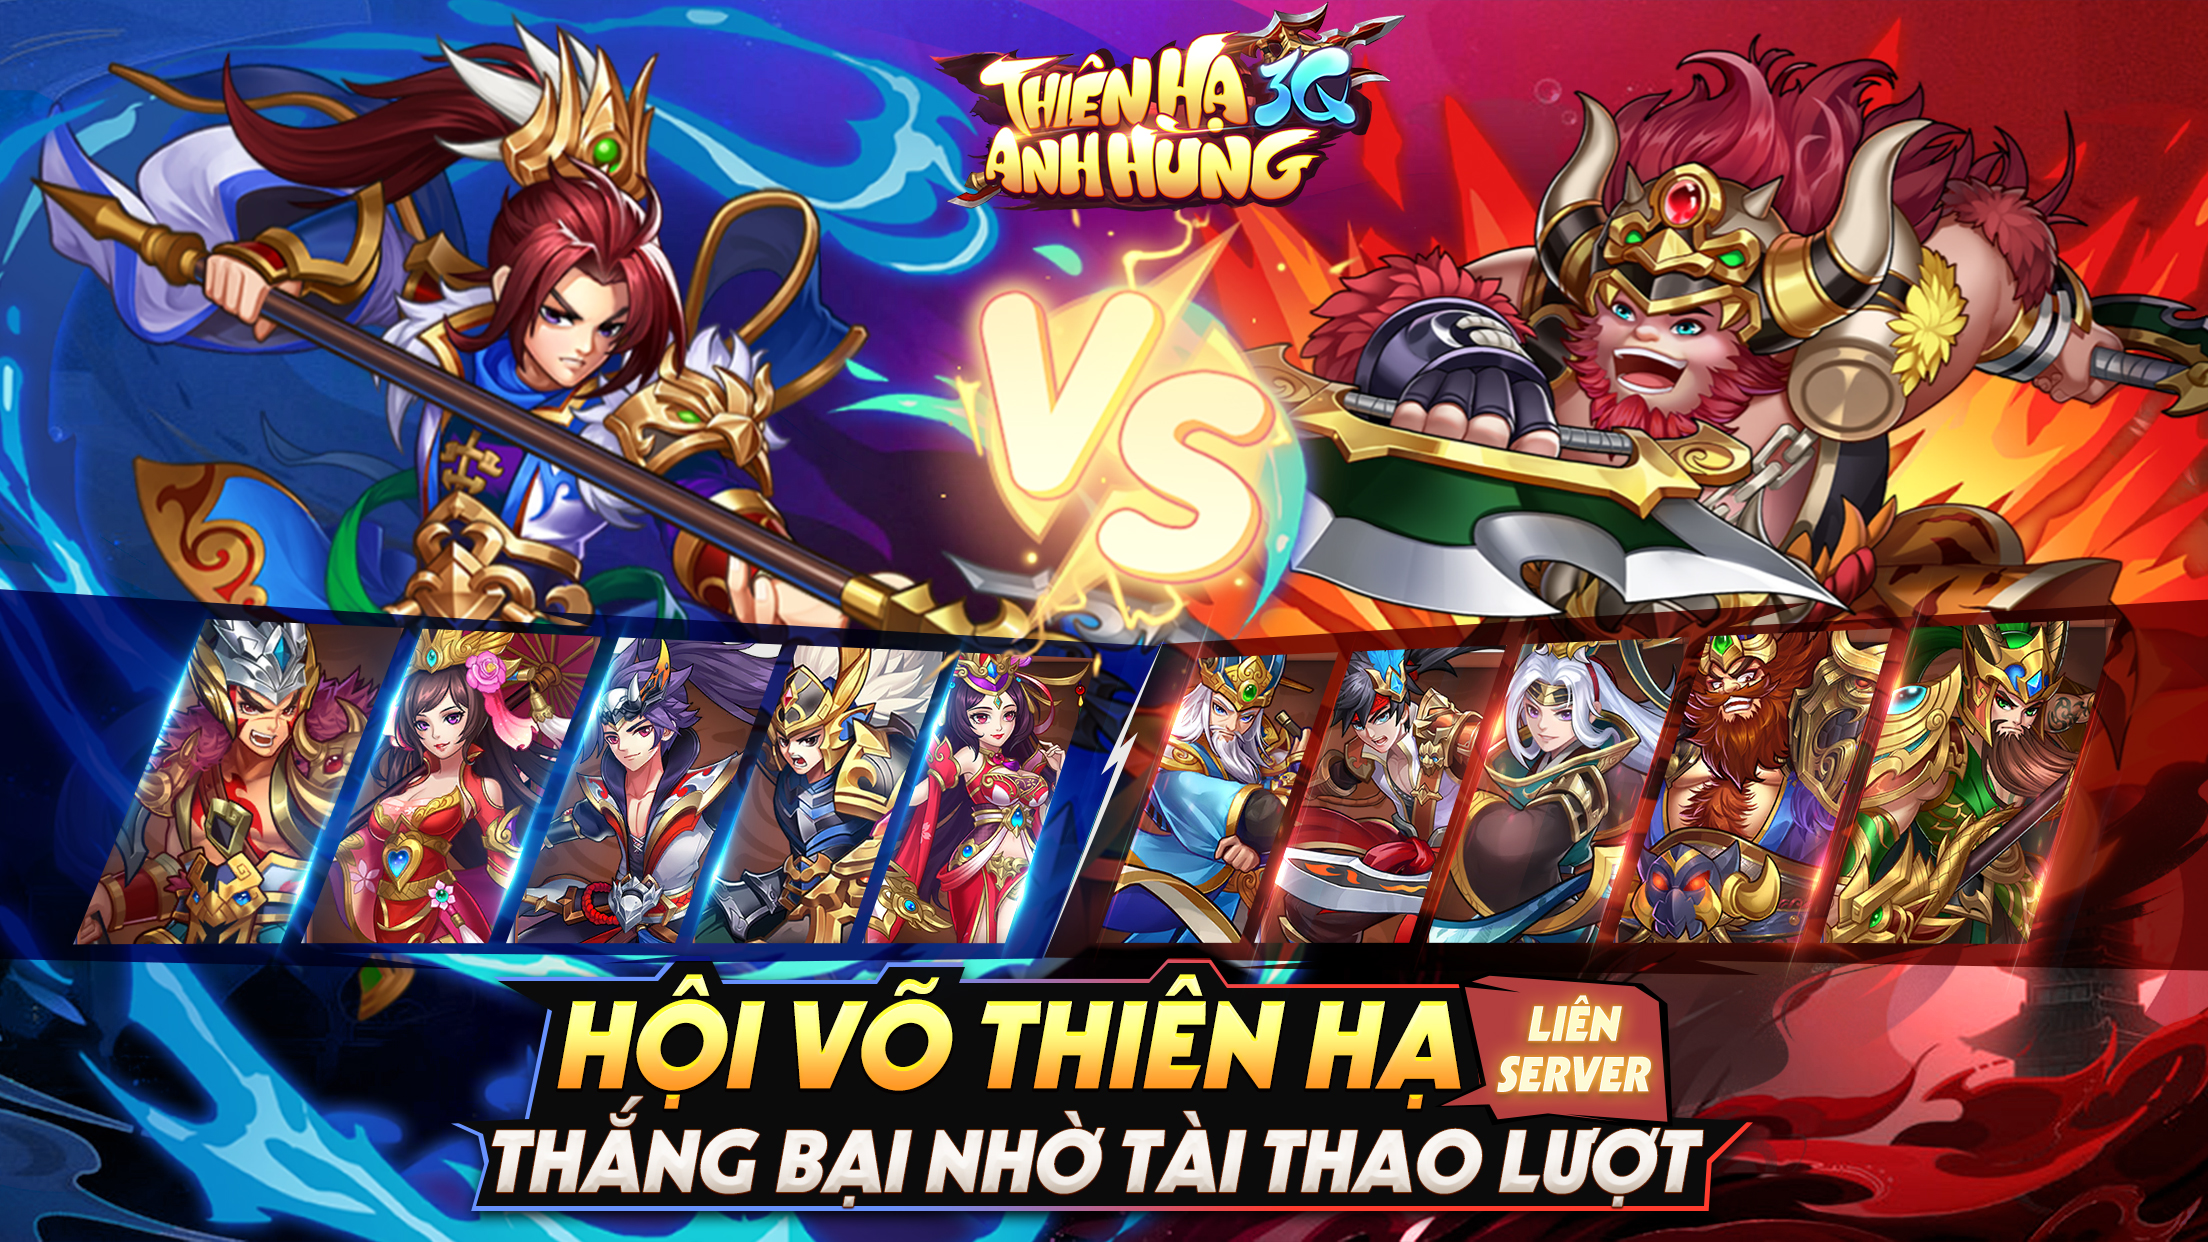 Thiên Hạ Anh Hùng 3Q –hướng dẫn bug game đấu tướng chiến thuật Tam Quốc “make in Việt Nam Anh-3